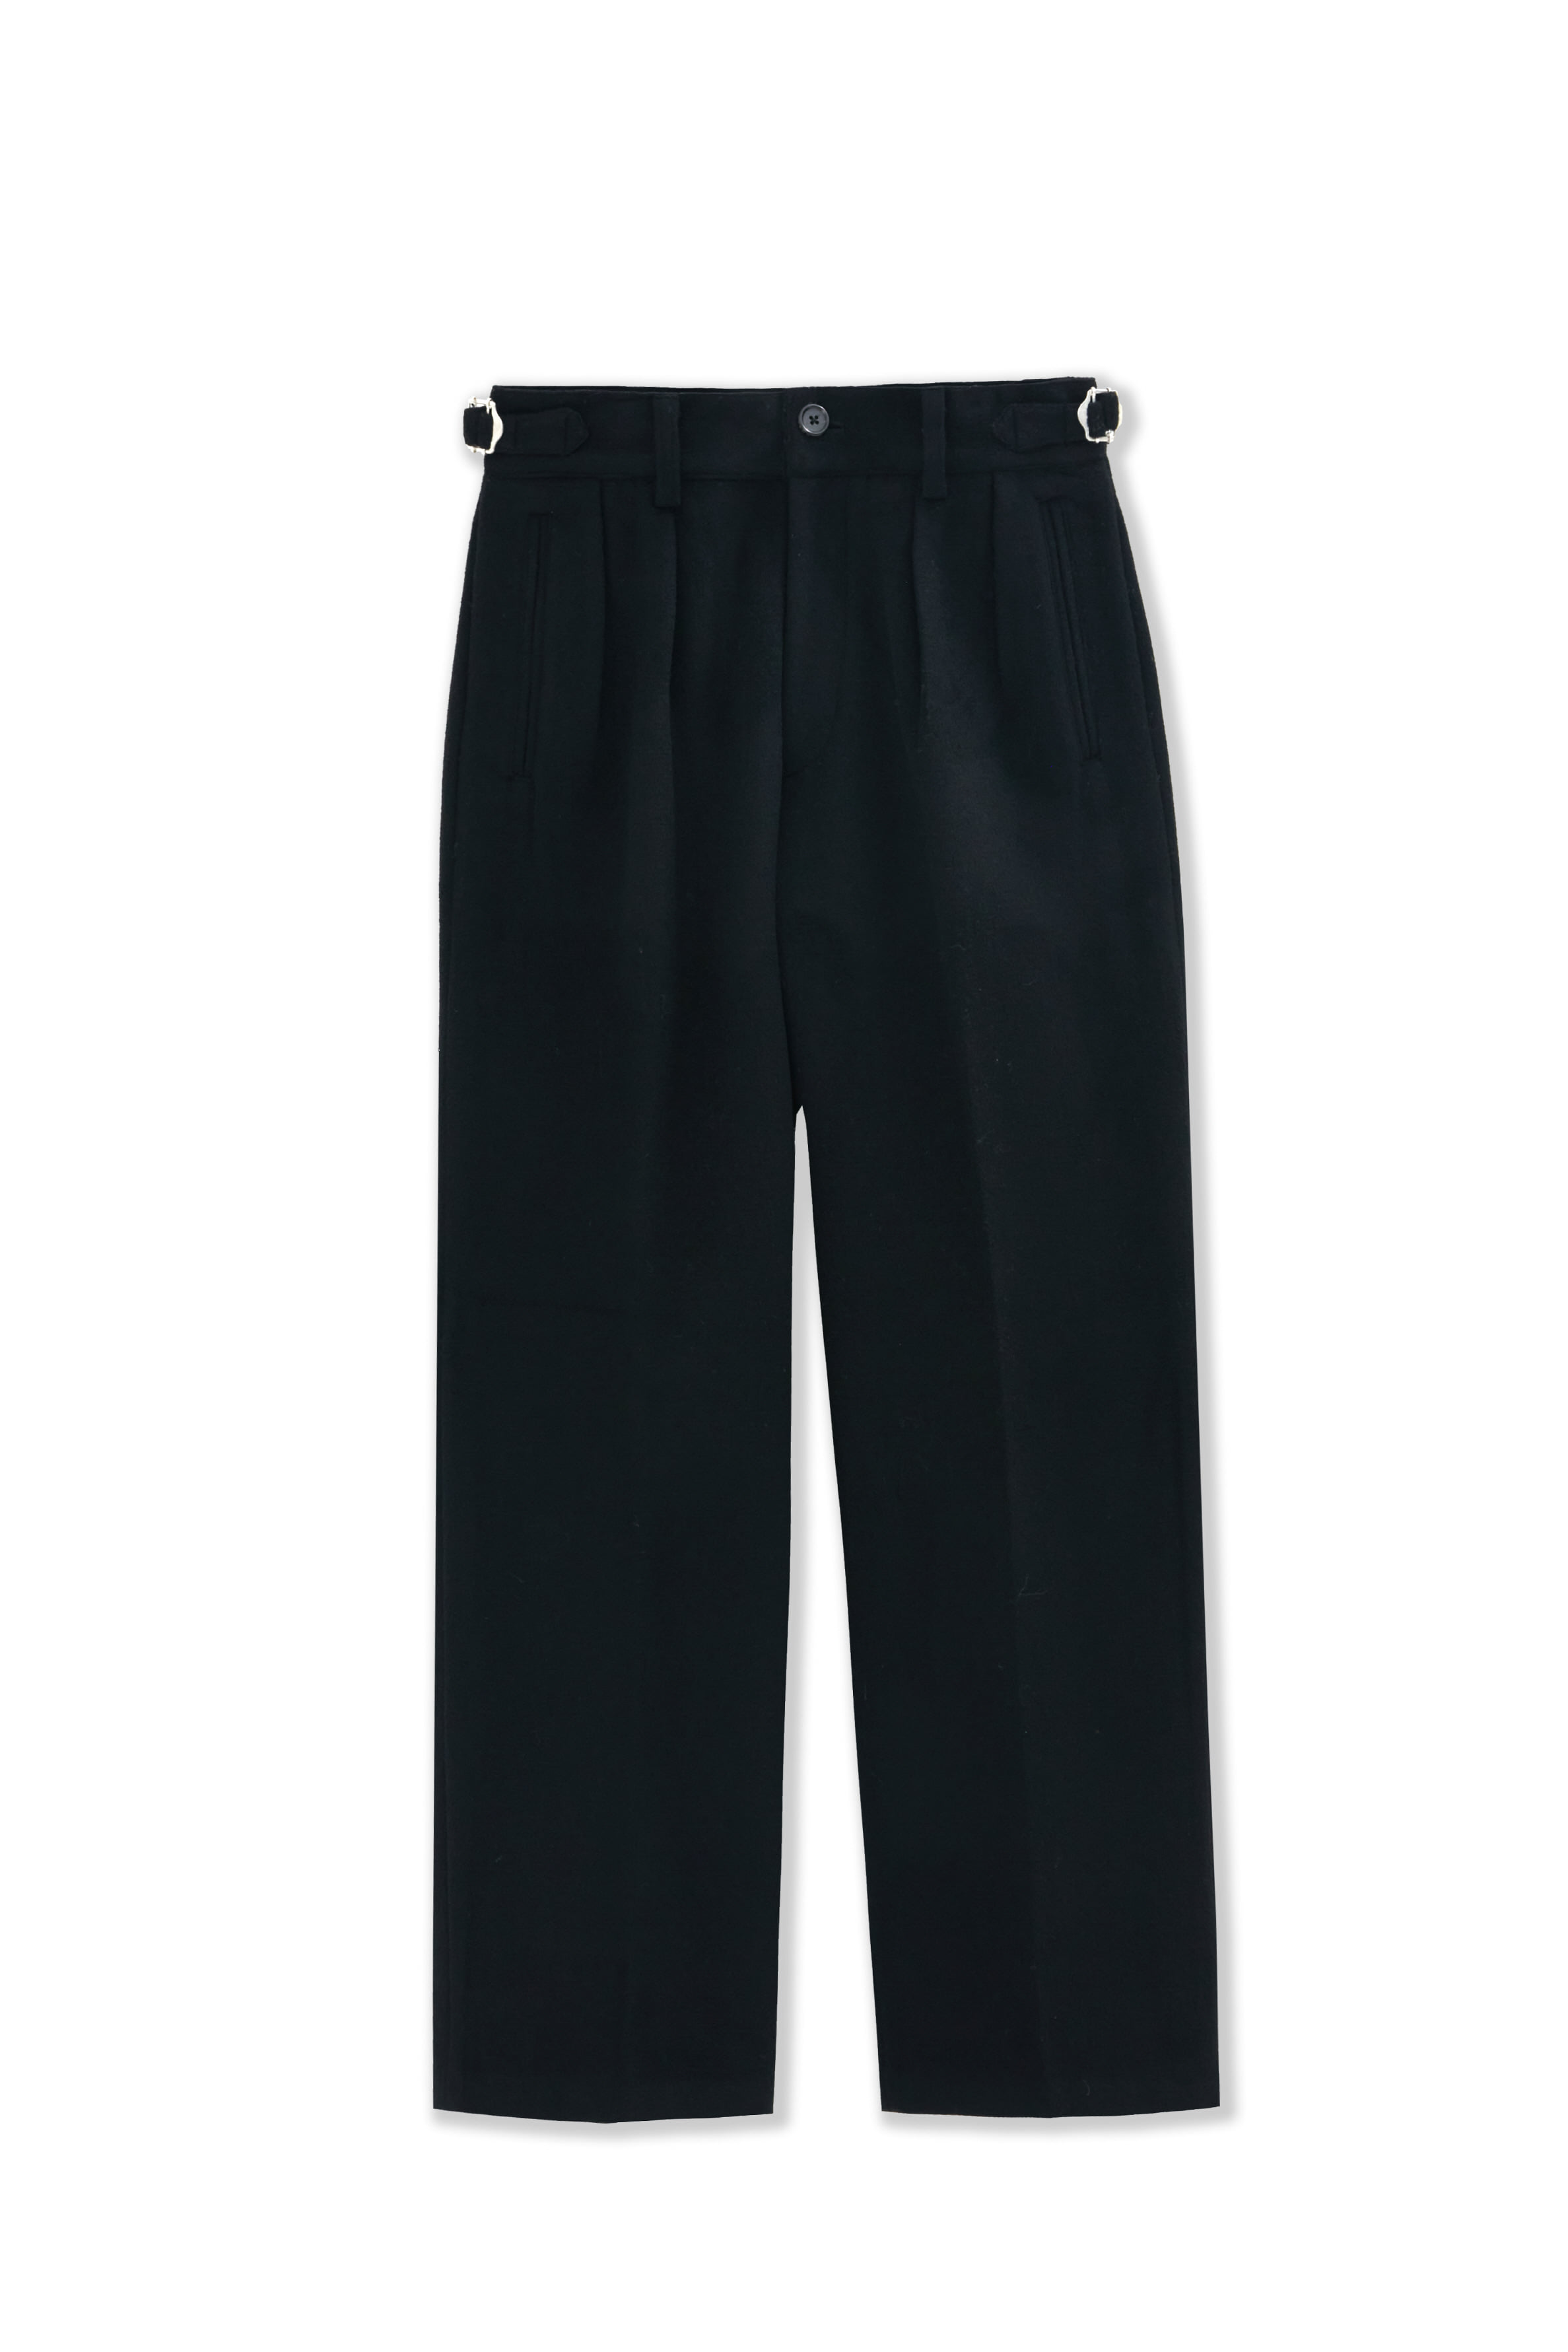 2pleats wide trousers[heavy wool]_black